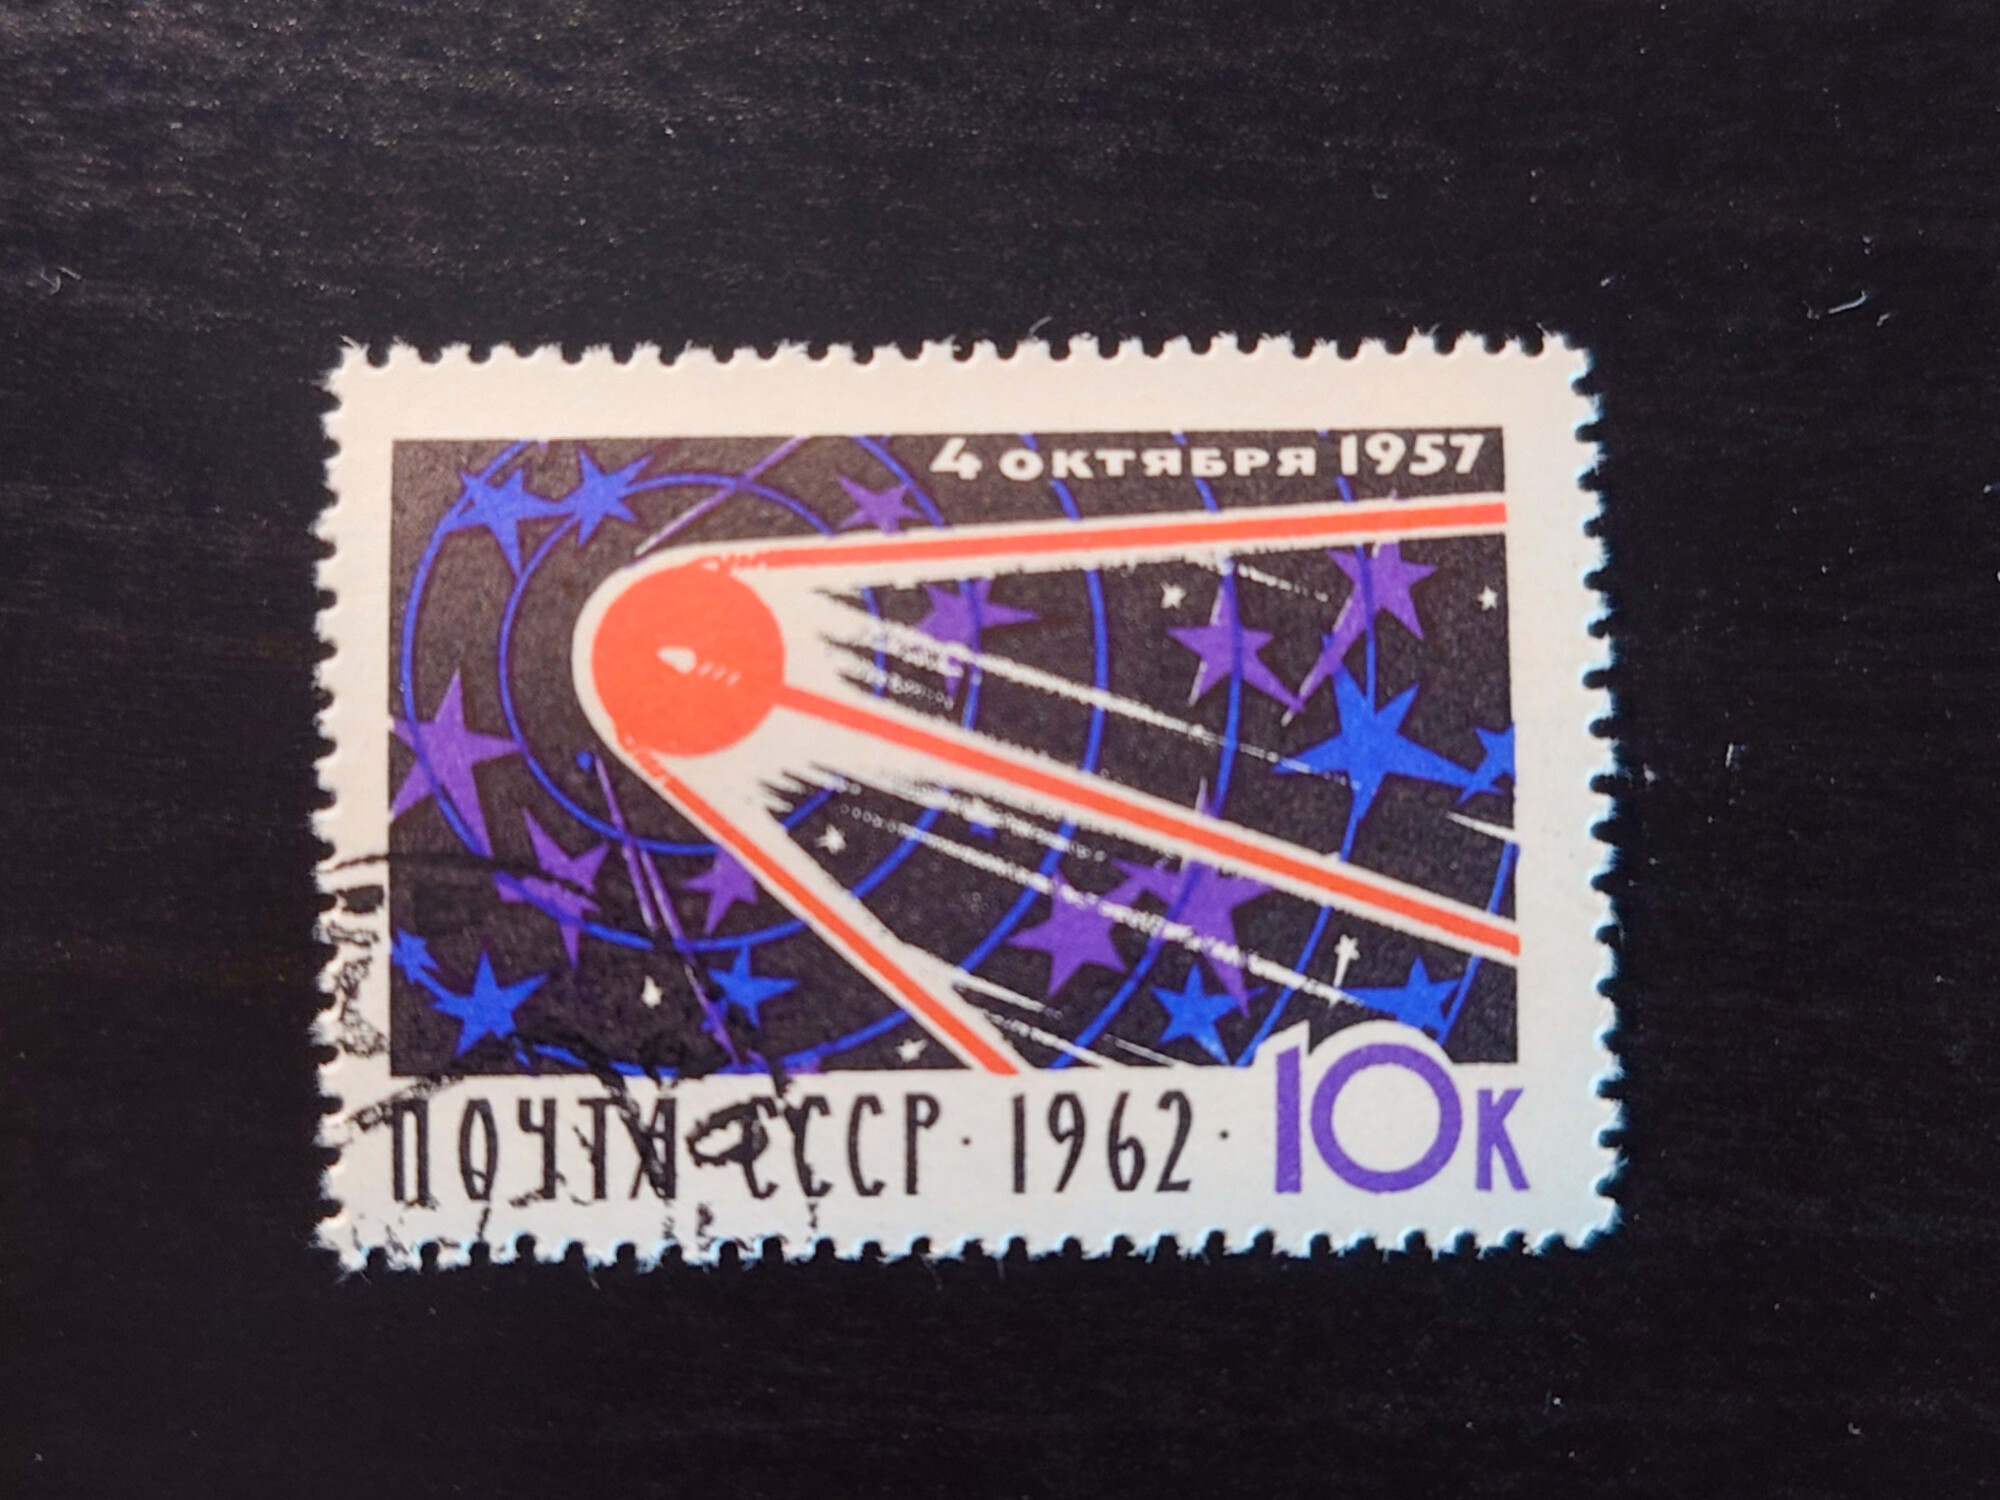  4  2975 (1962) (10 )